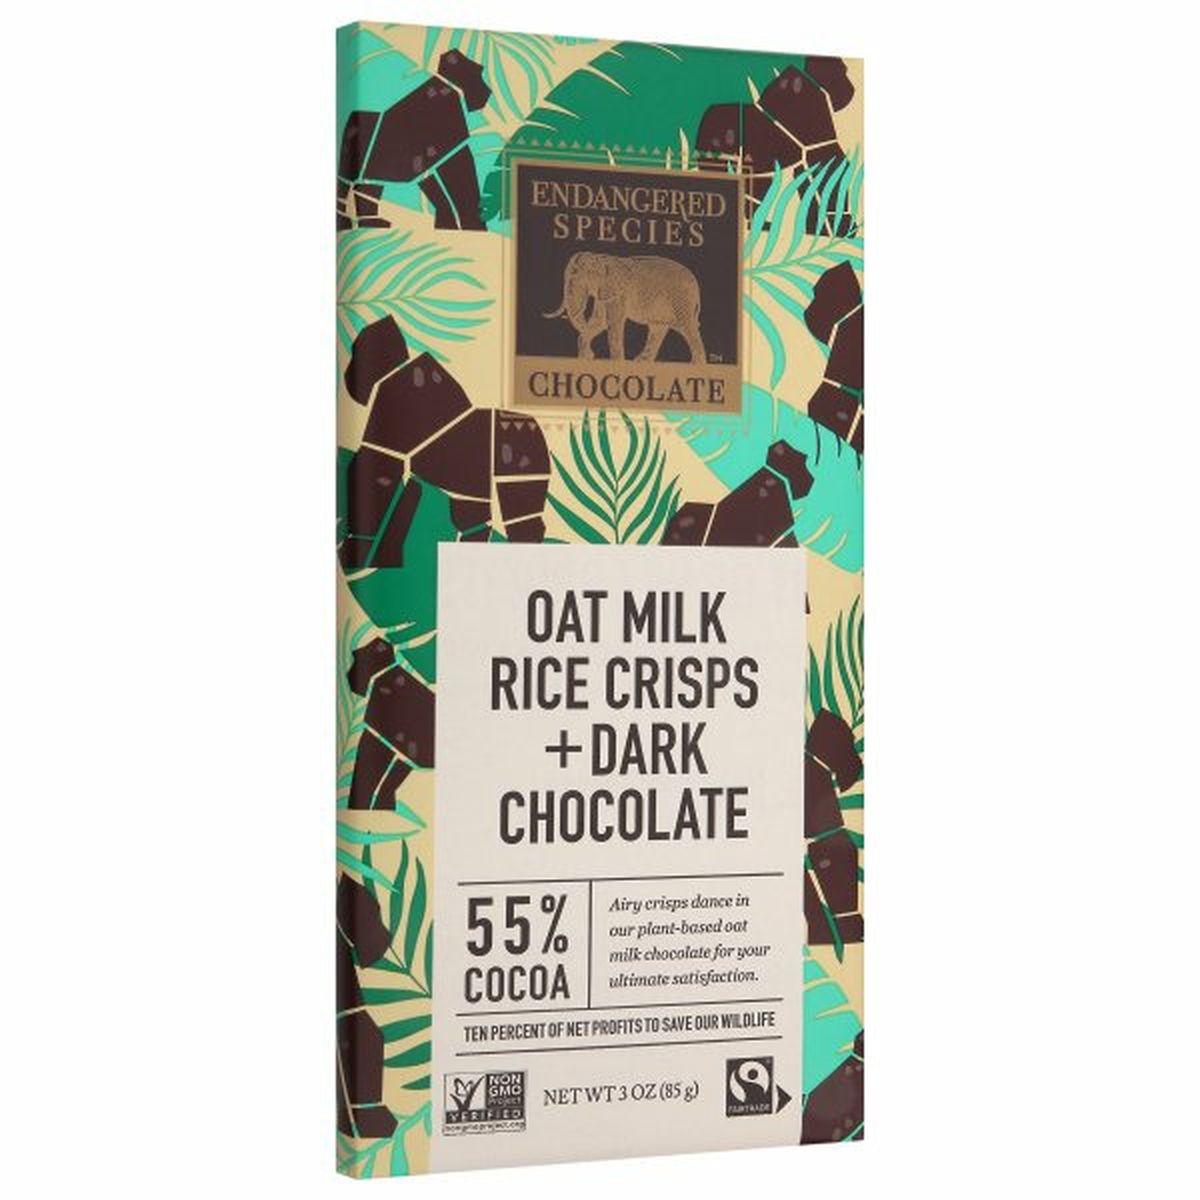 Calories in Endangered Species Chocolate, Oat Milk Rice Crisp + Dark Chocolate, 55% Cocoa